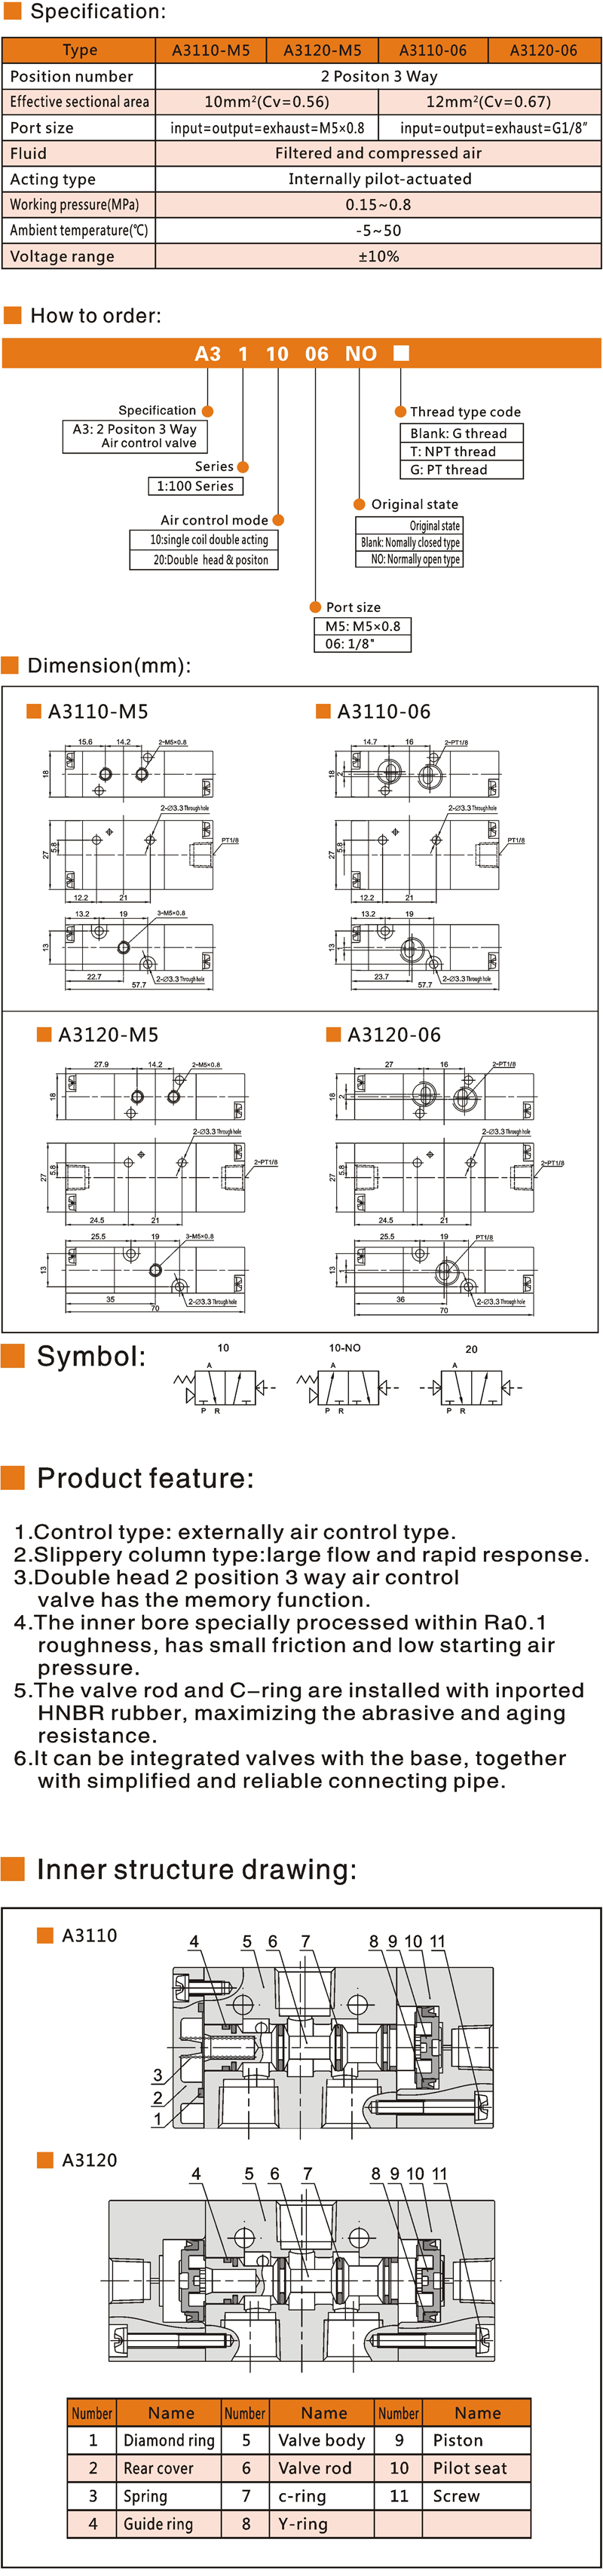 19 A3100 Air control valve.jpg